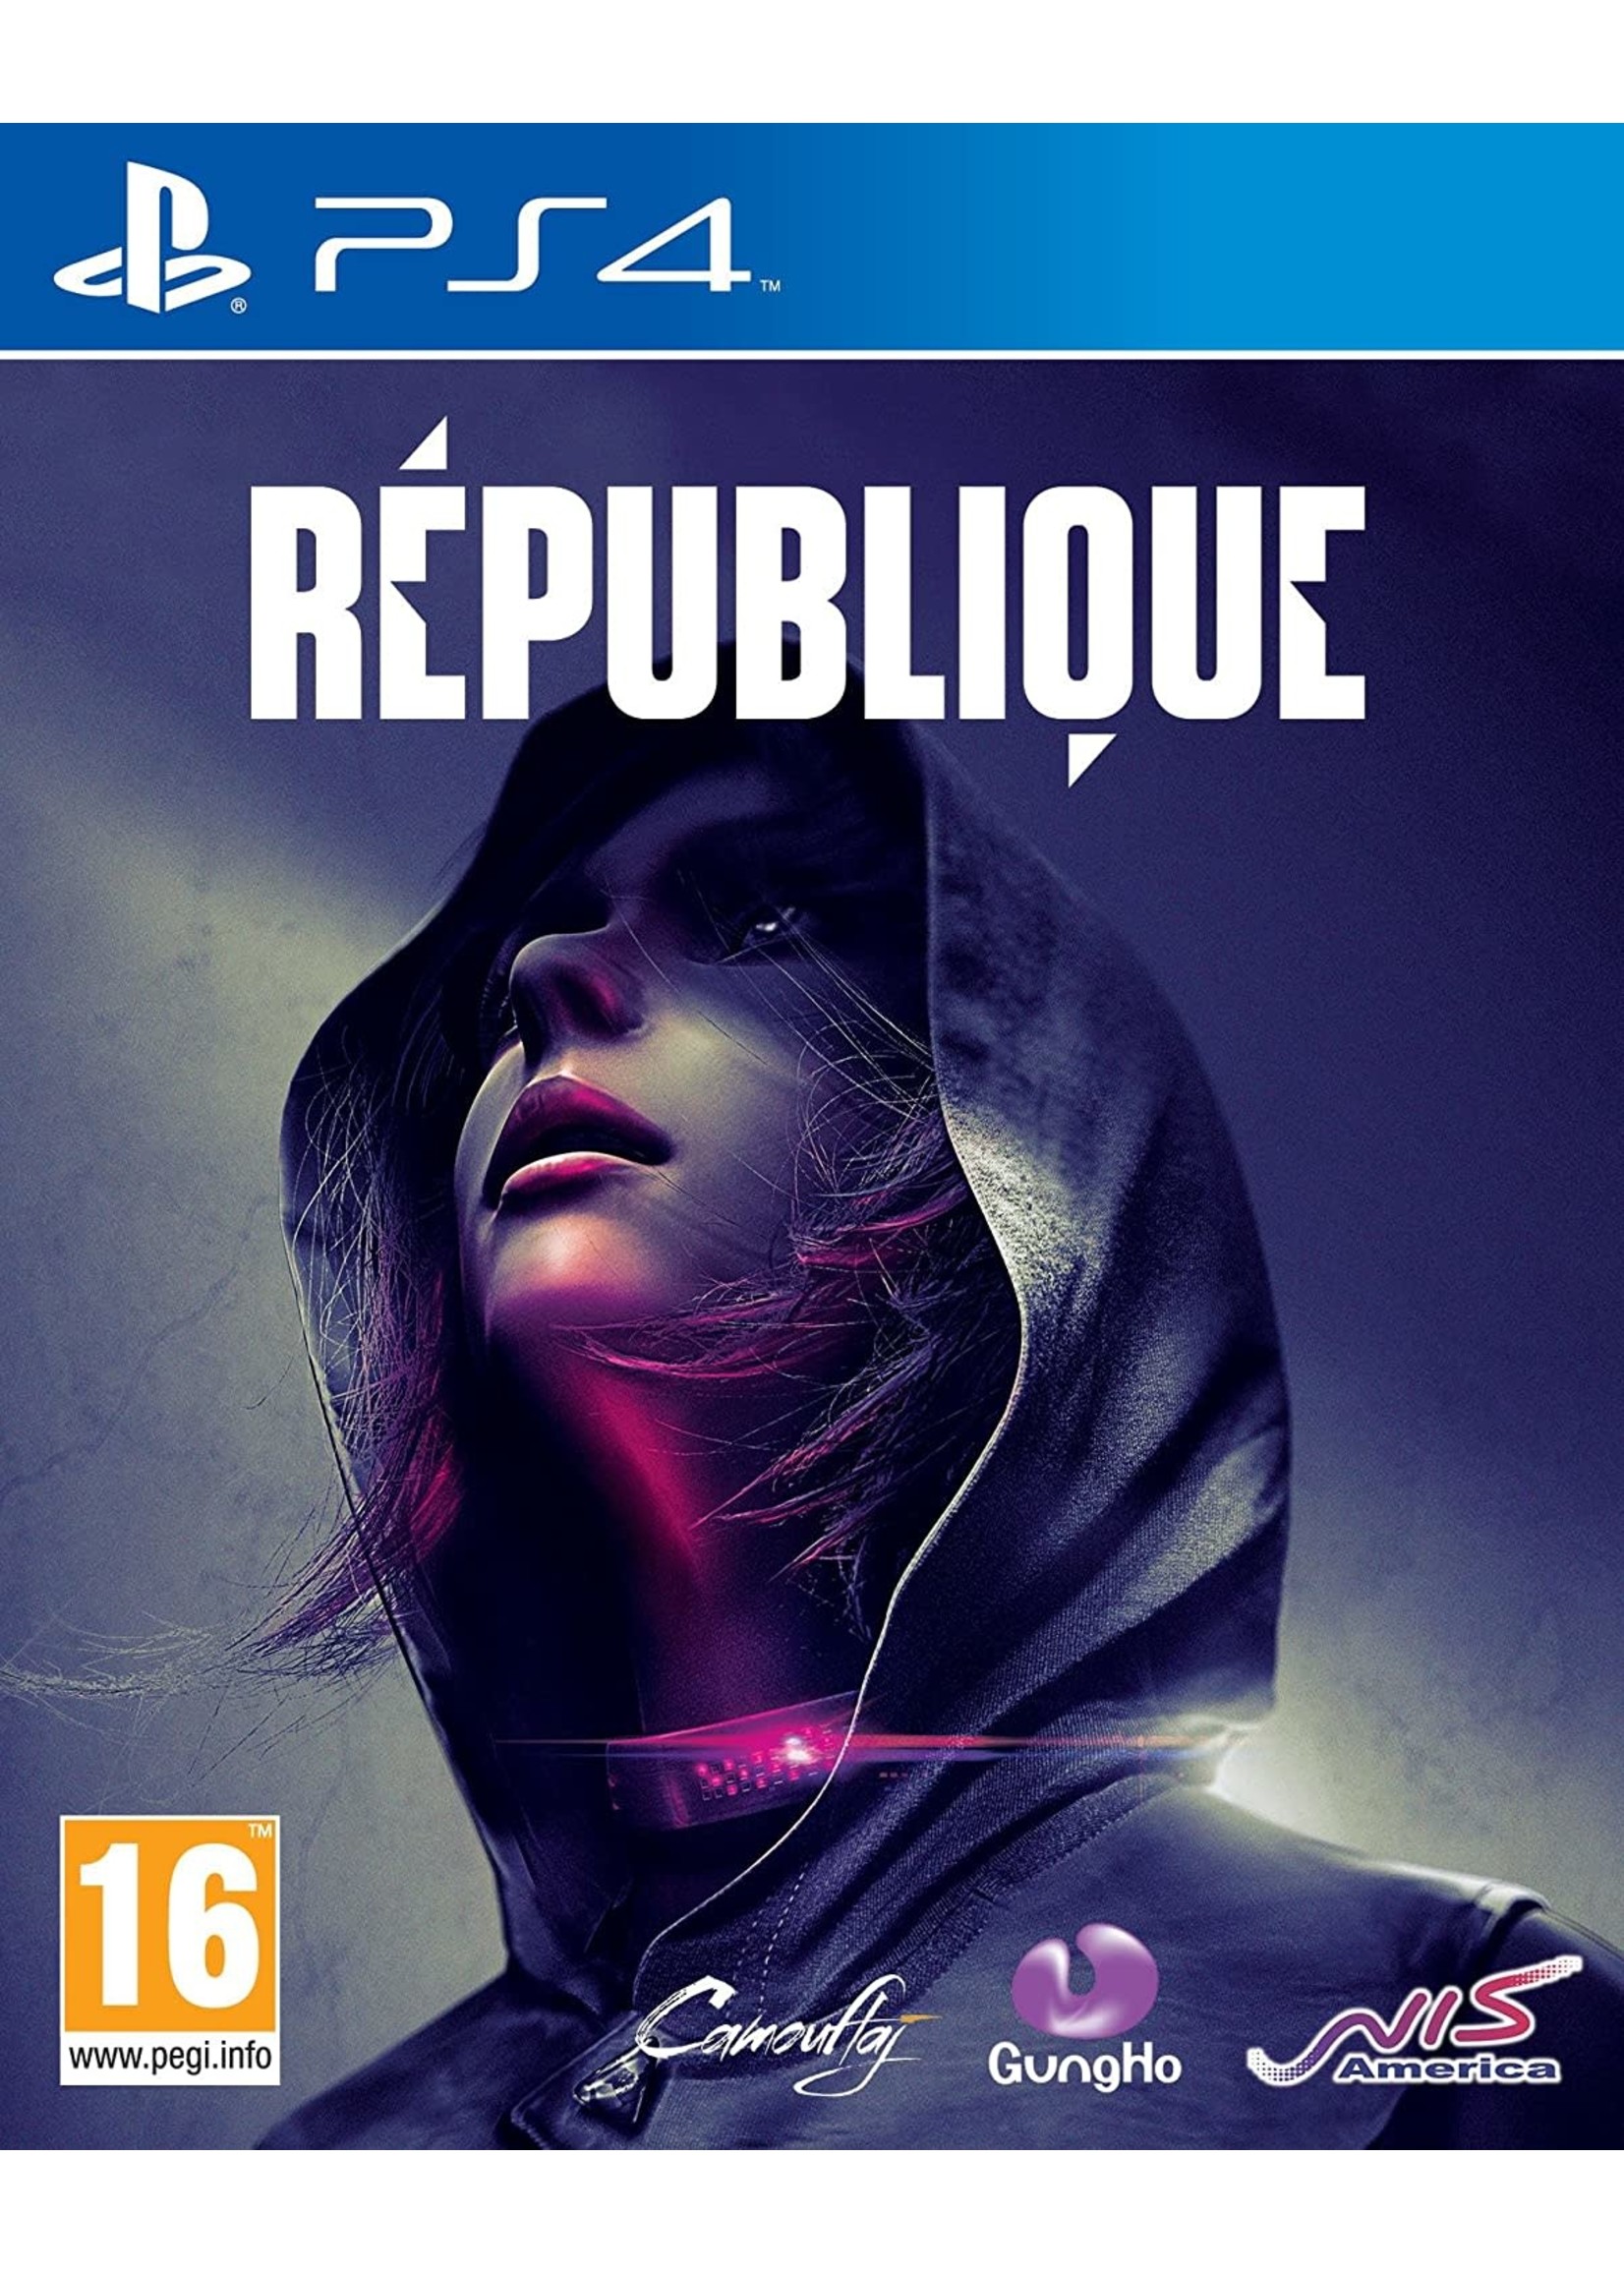 Republique - PS4 NEW